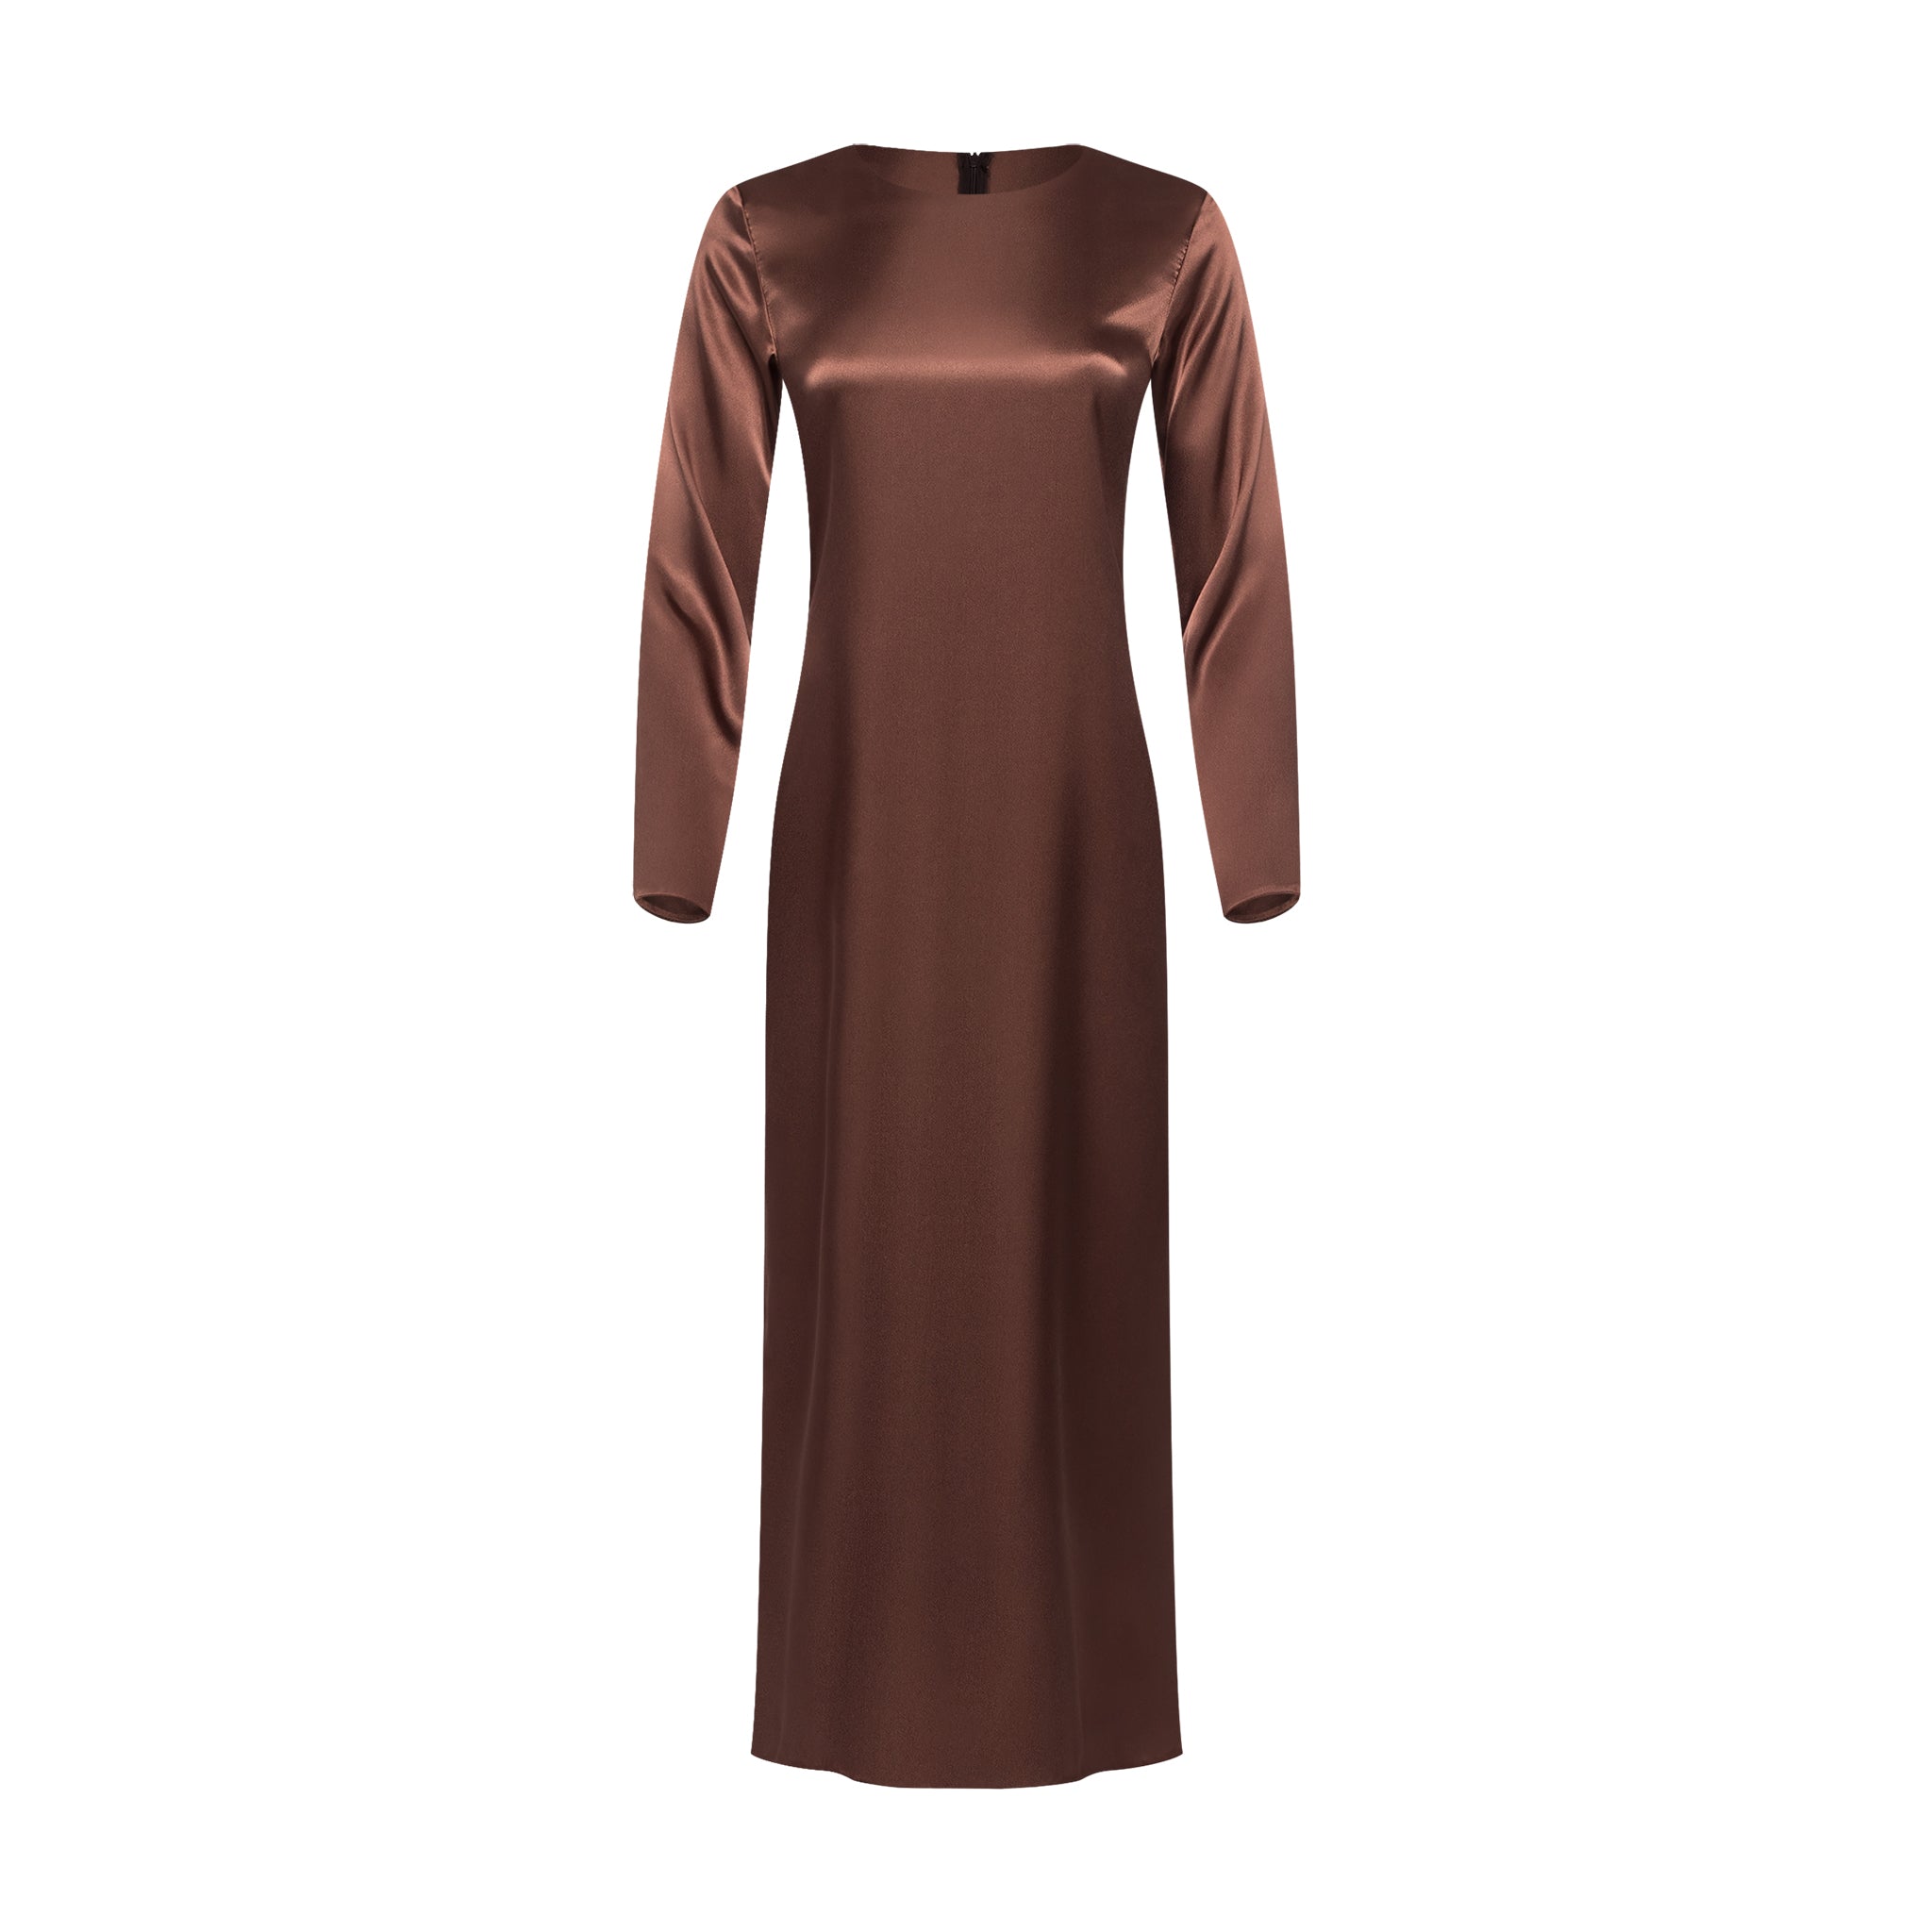 Long Sleeve Satin Slip Dress in Chestnut Brown